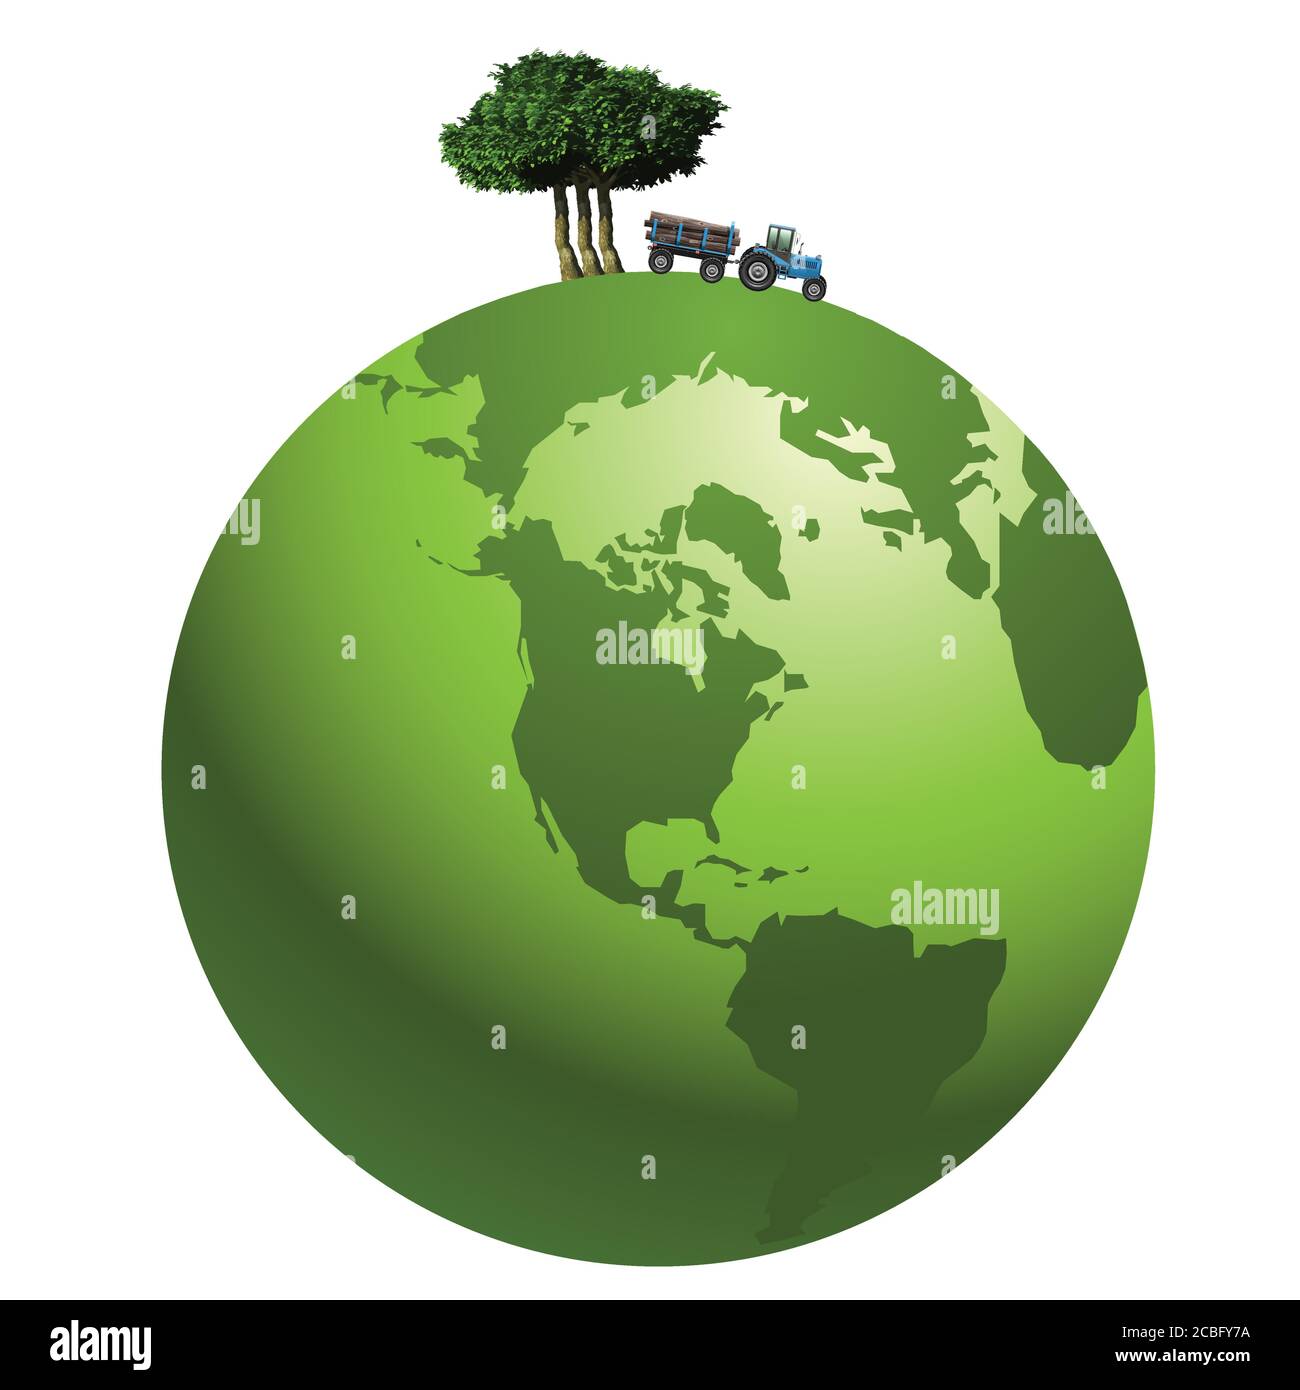 Représentation de la déforestation des forêts tropicales principalement dans les régions tropicales représenté sur une planète verte, isolée sur fond blanc Illustration de Vecteur